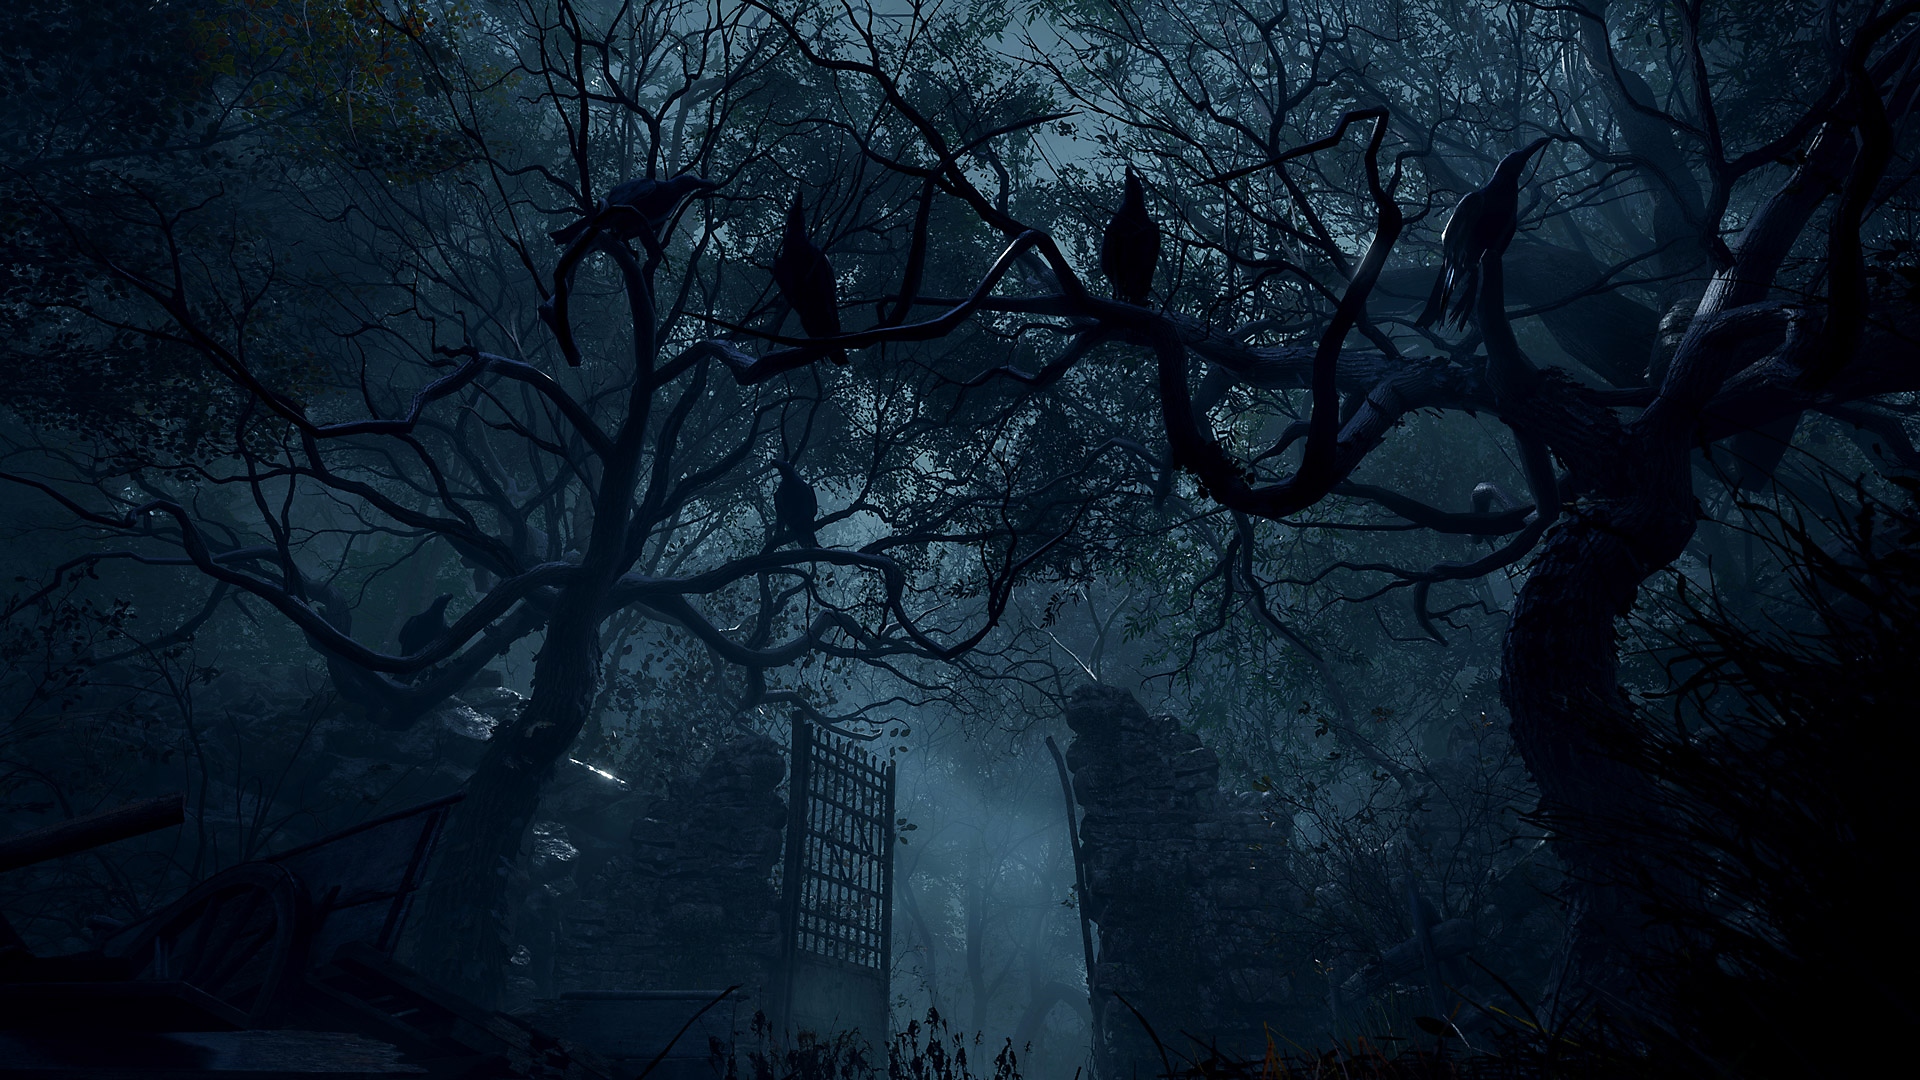 Resident Evil 4 – skjermbilde av en høy steinport i en tett skog.